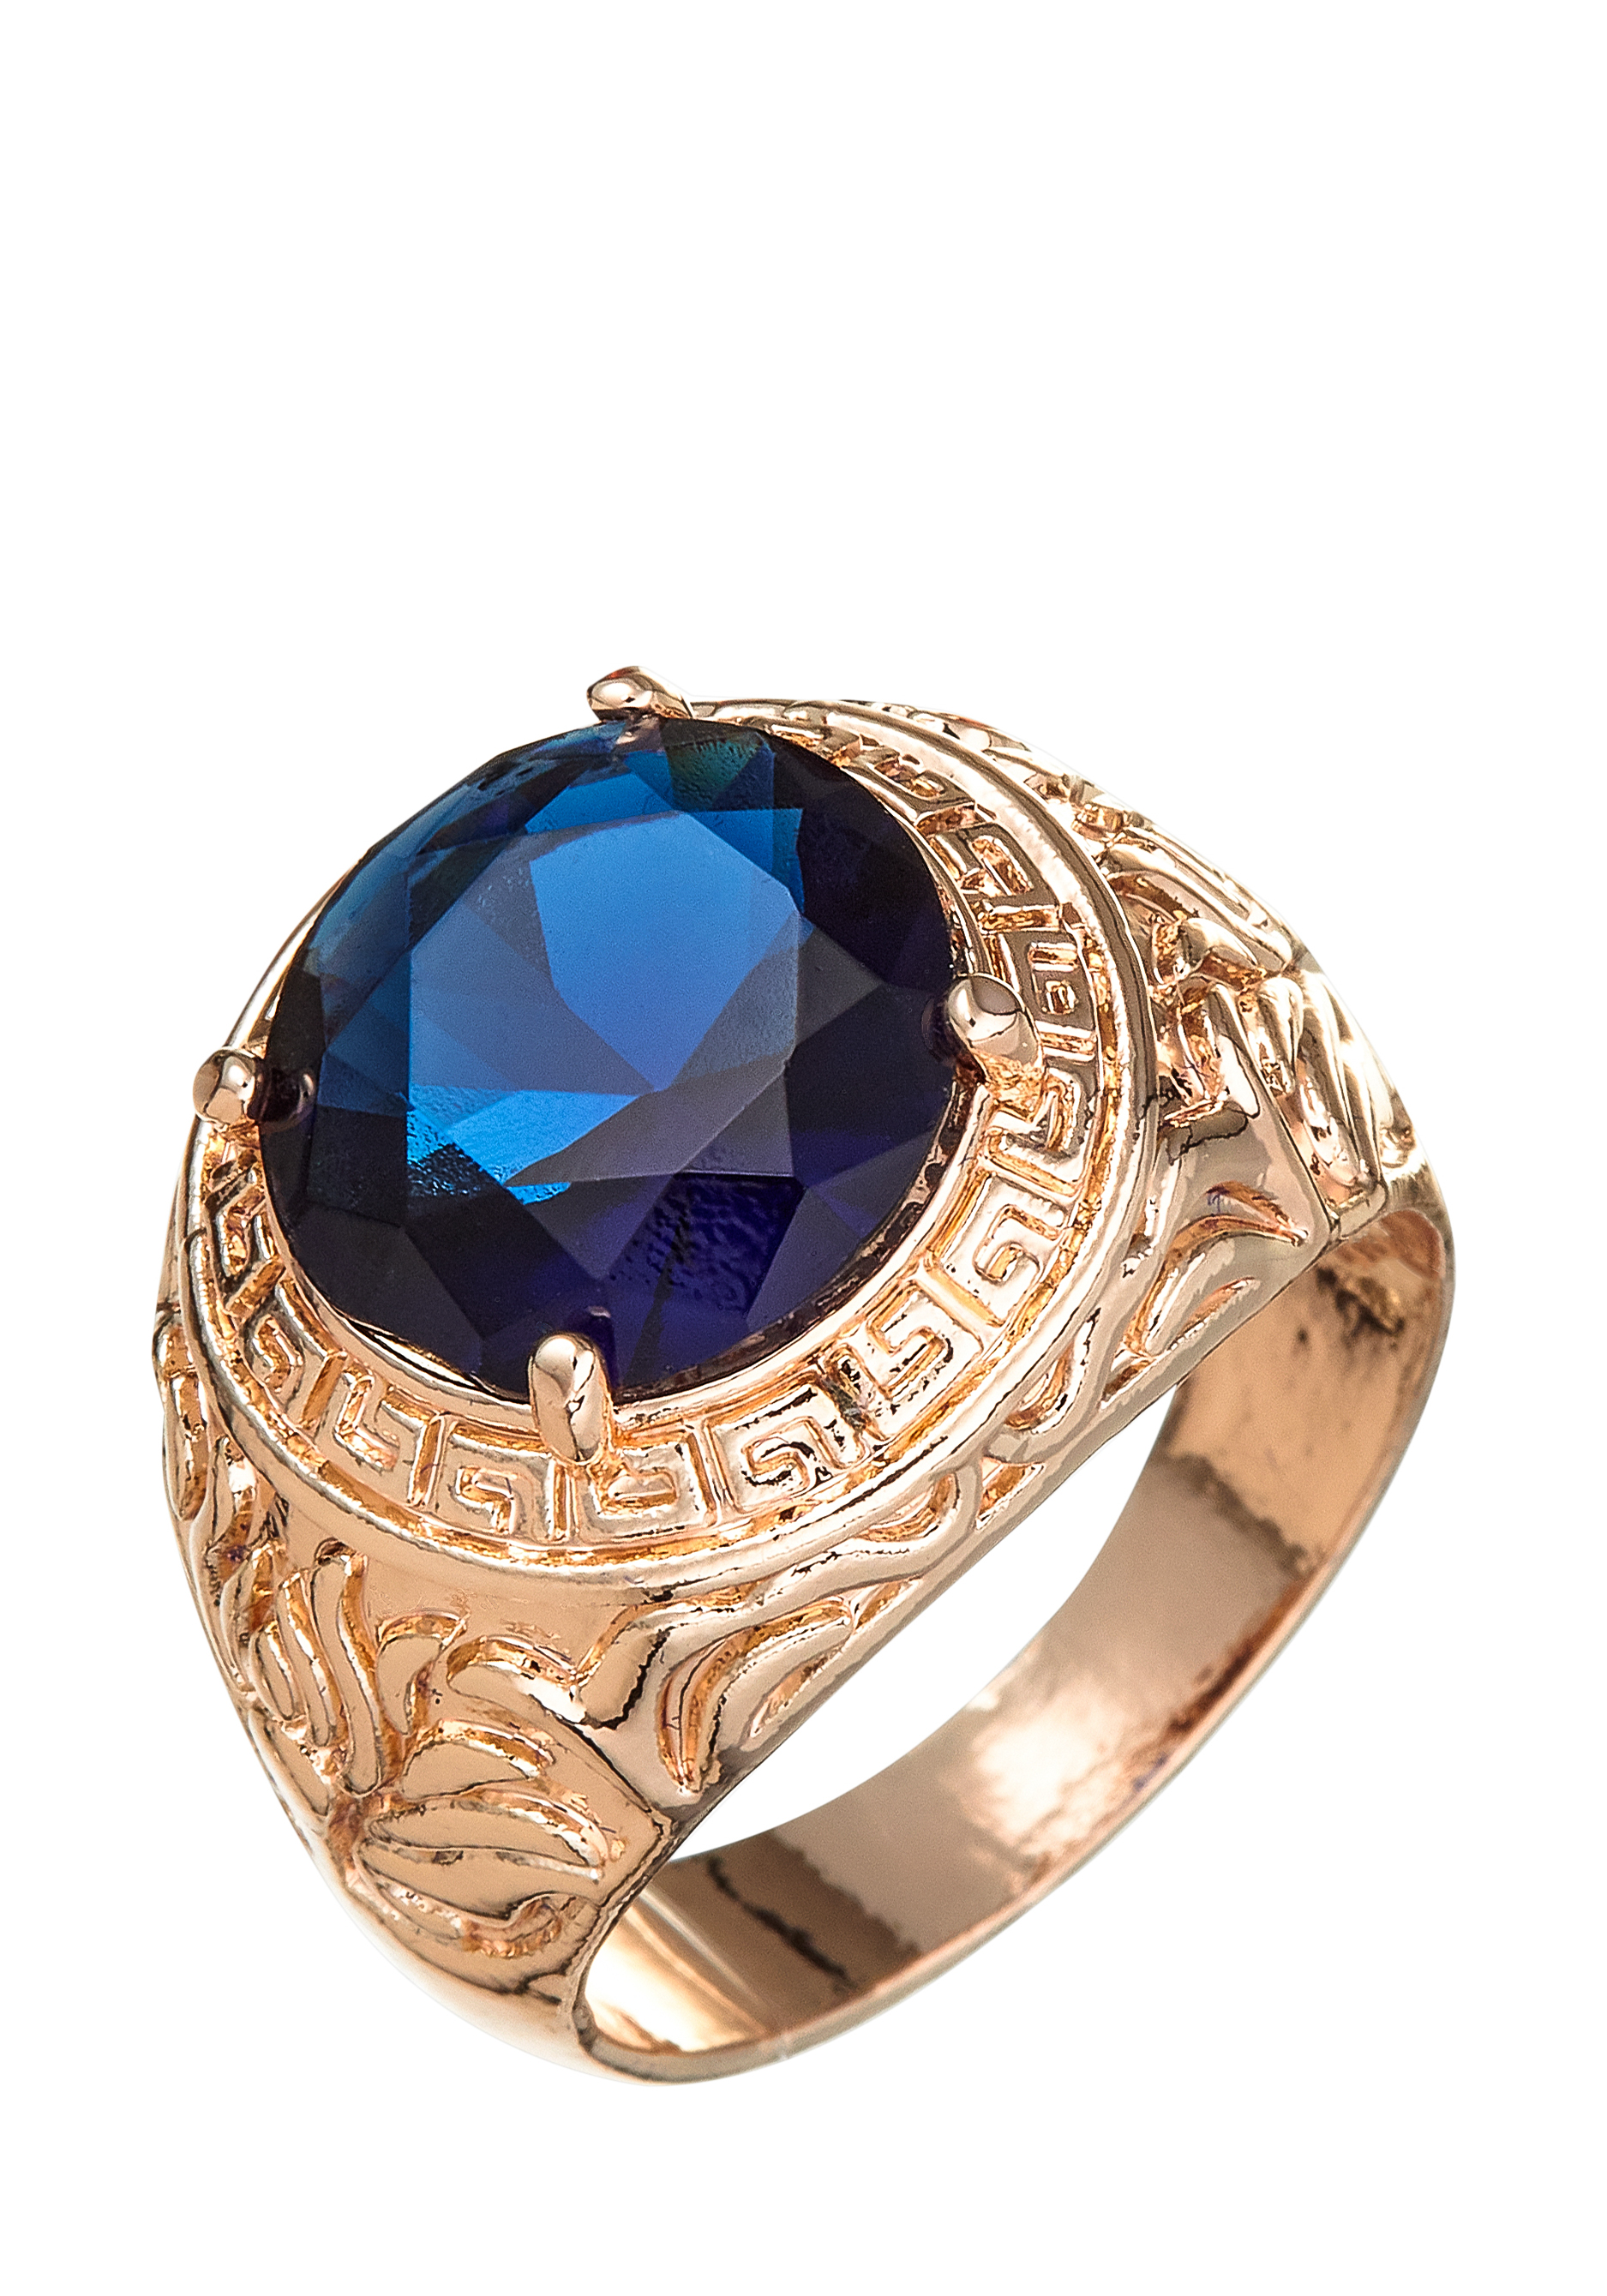 Комплект "Очаровательный вечер" Apsara, цвет синий, размер 19 перстень - фото 2